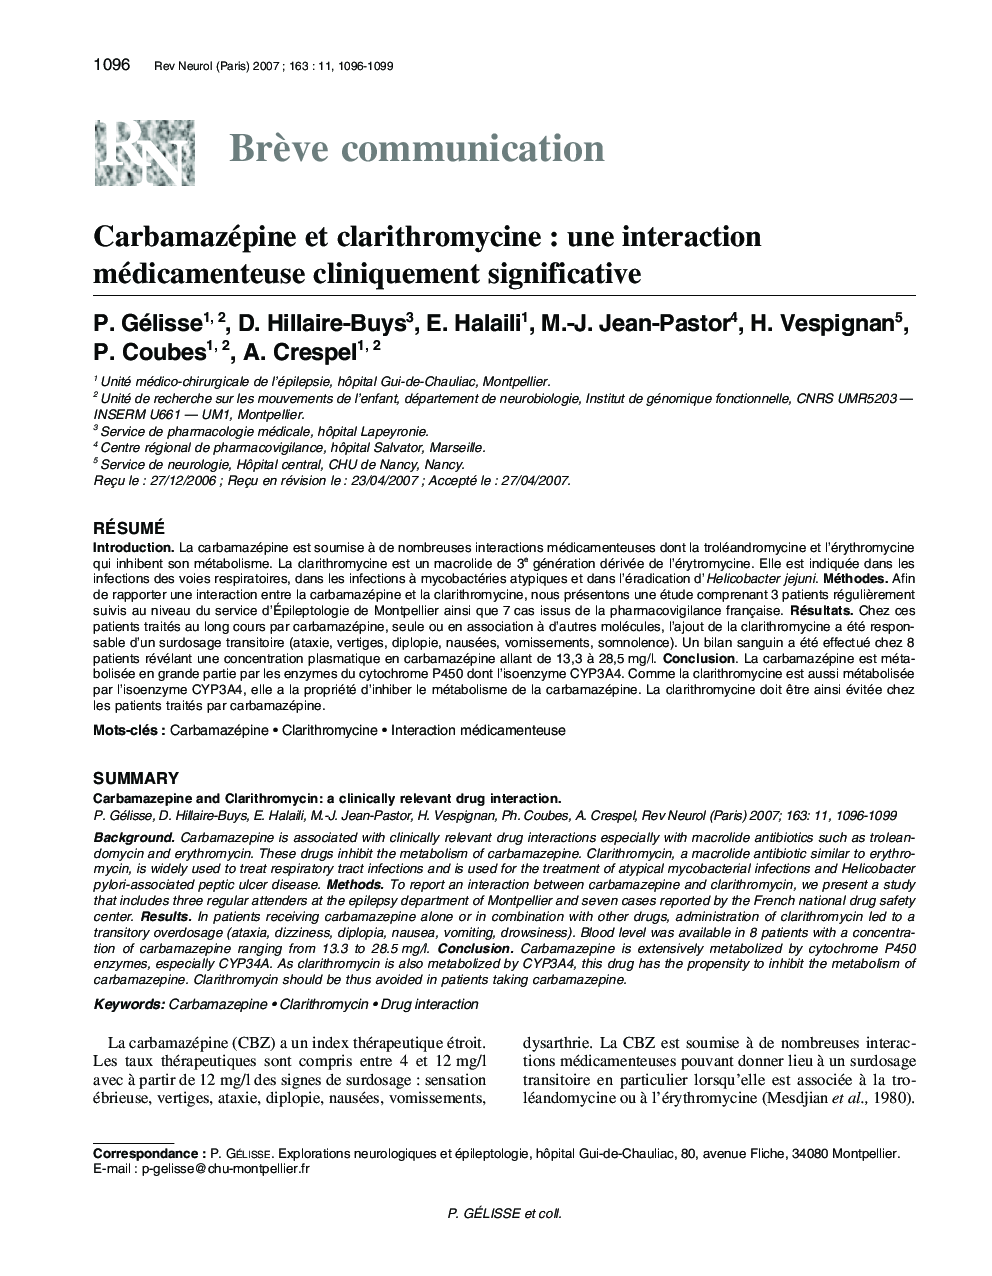 Carbamazépine et clarithromycine : une interaction médicamenteuse cliniquement significative